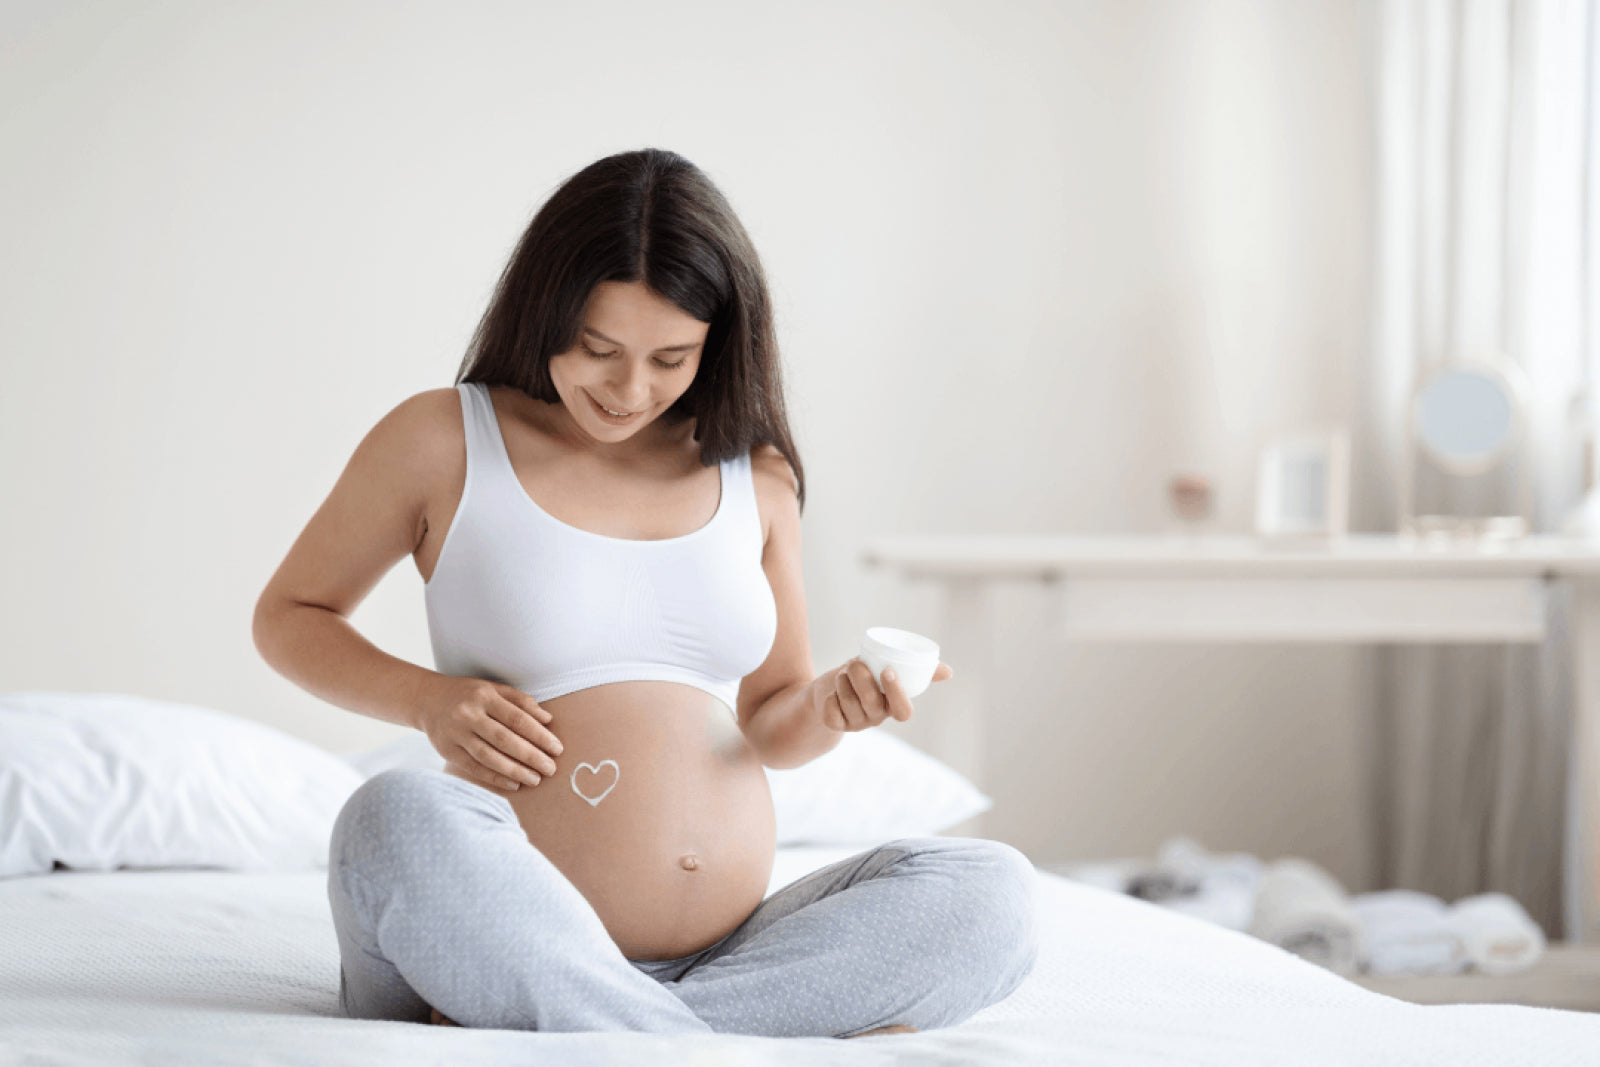 Mitos e verdades sobre gravidez e saúde da mulher